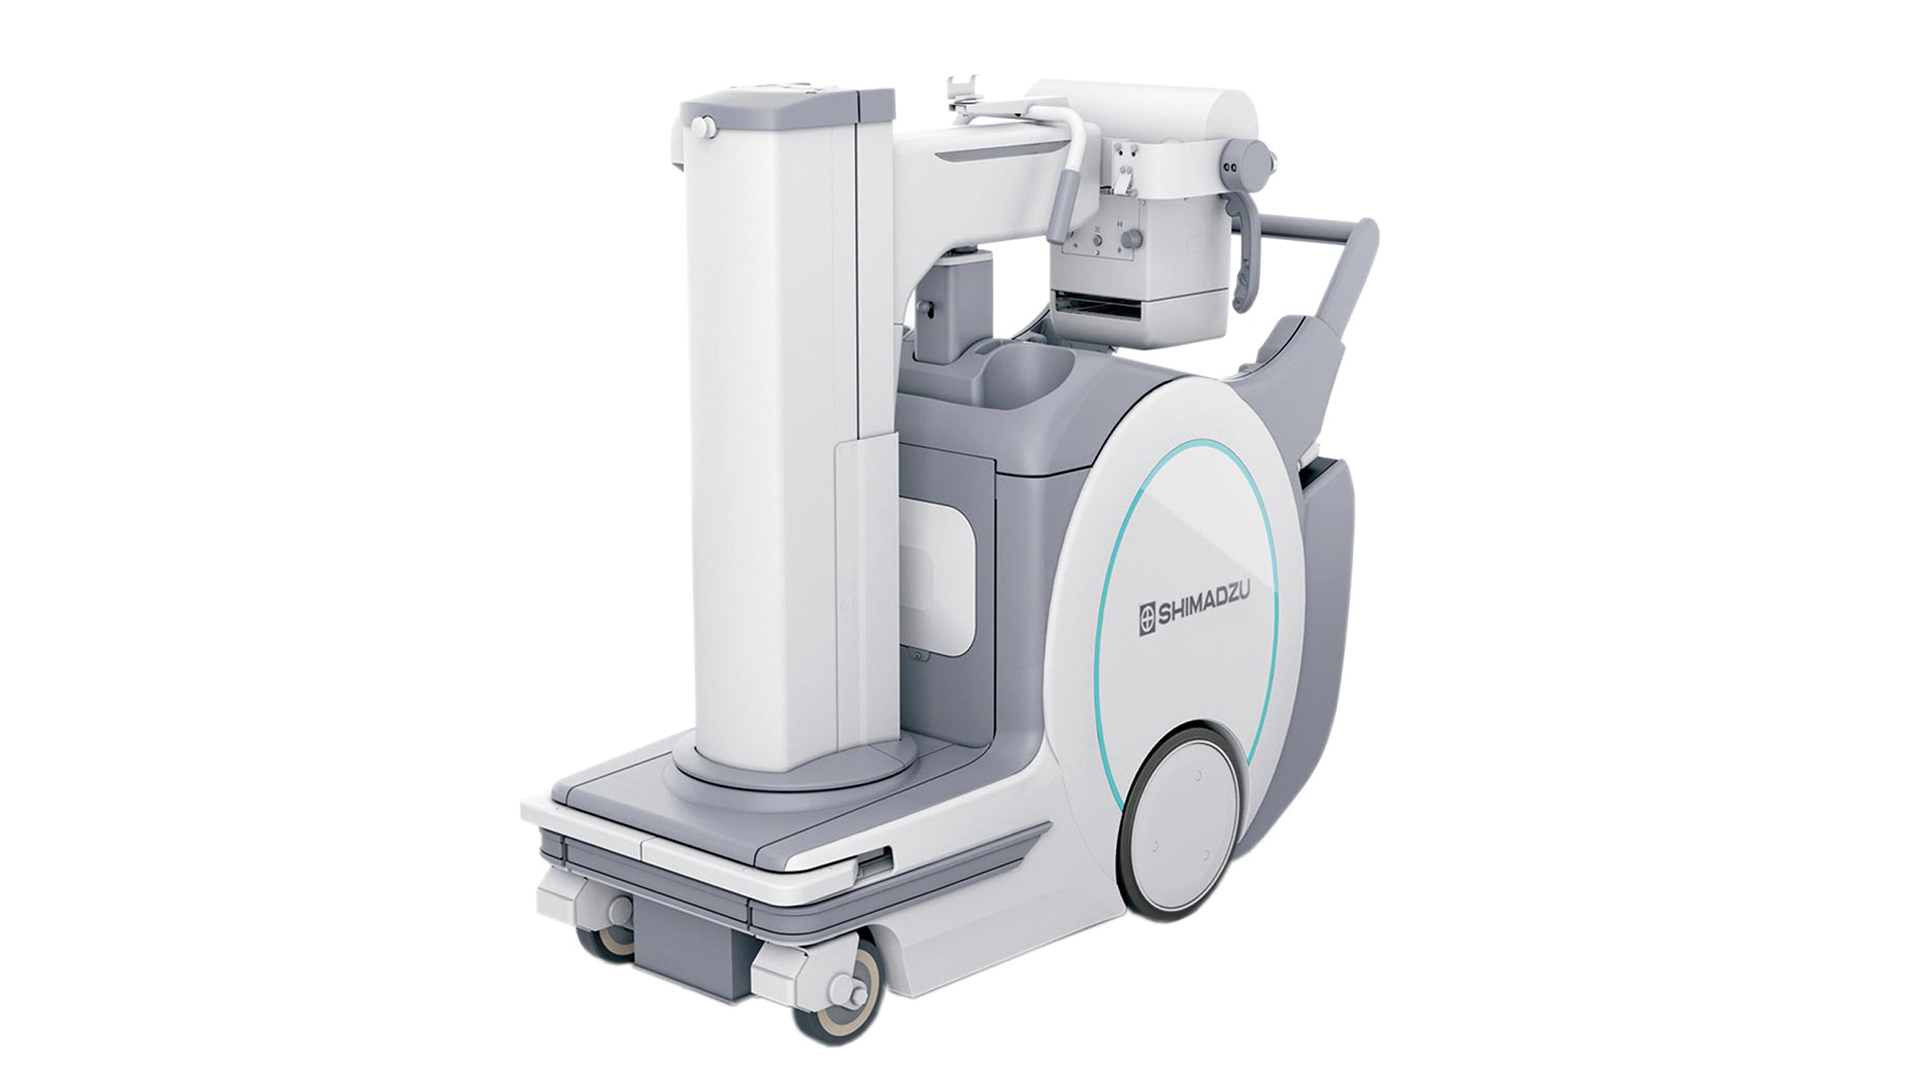 Röntgentechnik mobile Anlagen: Shimadzu MX8